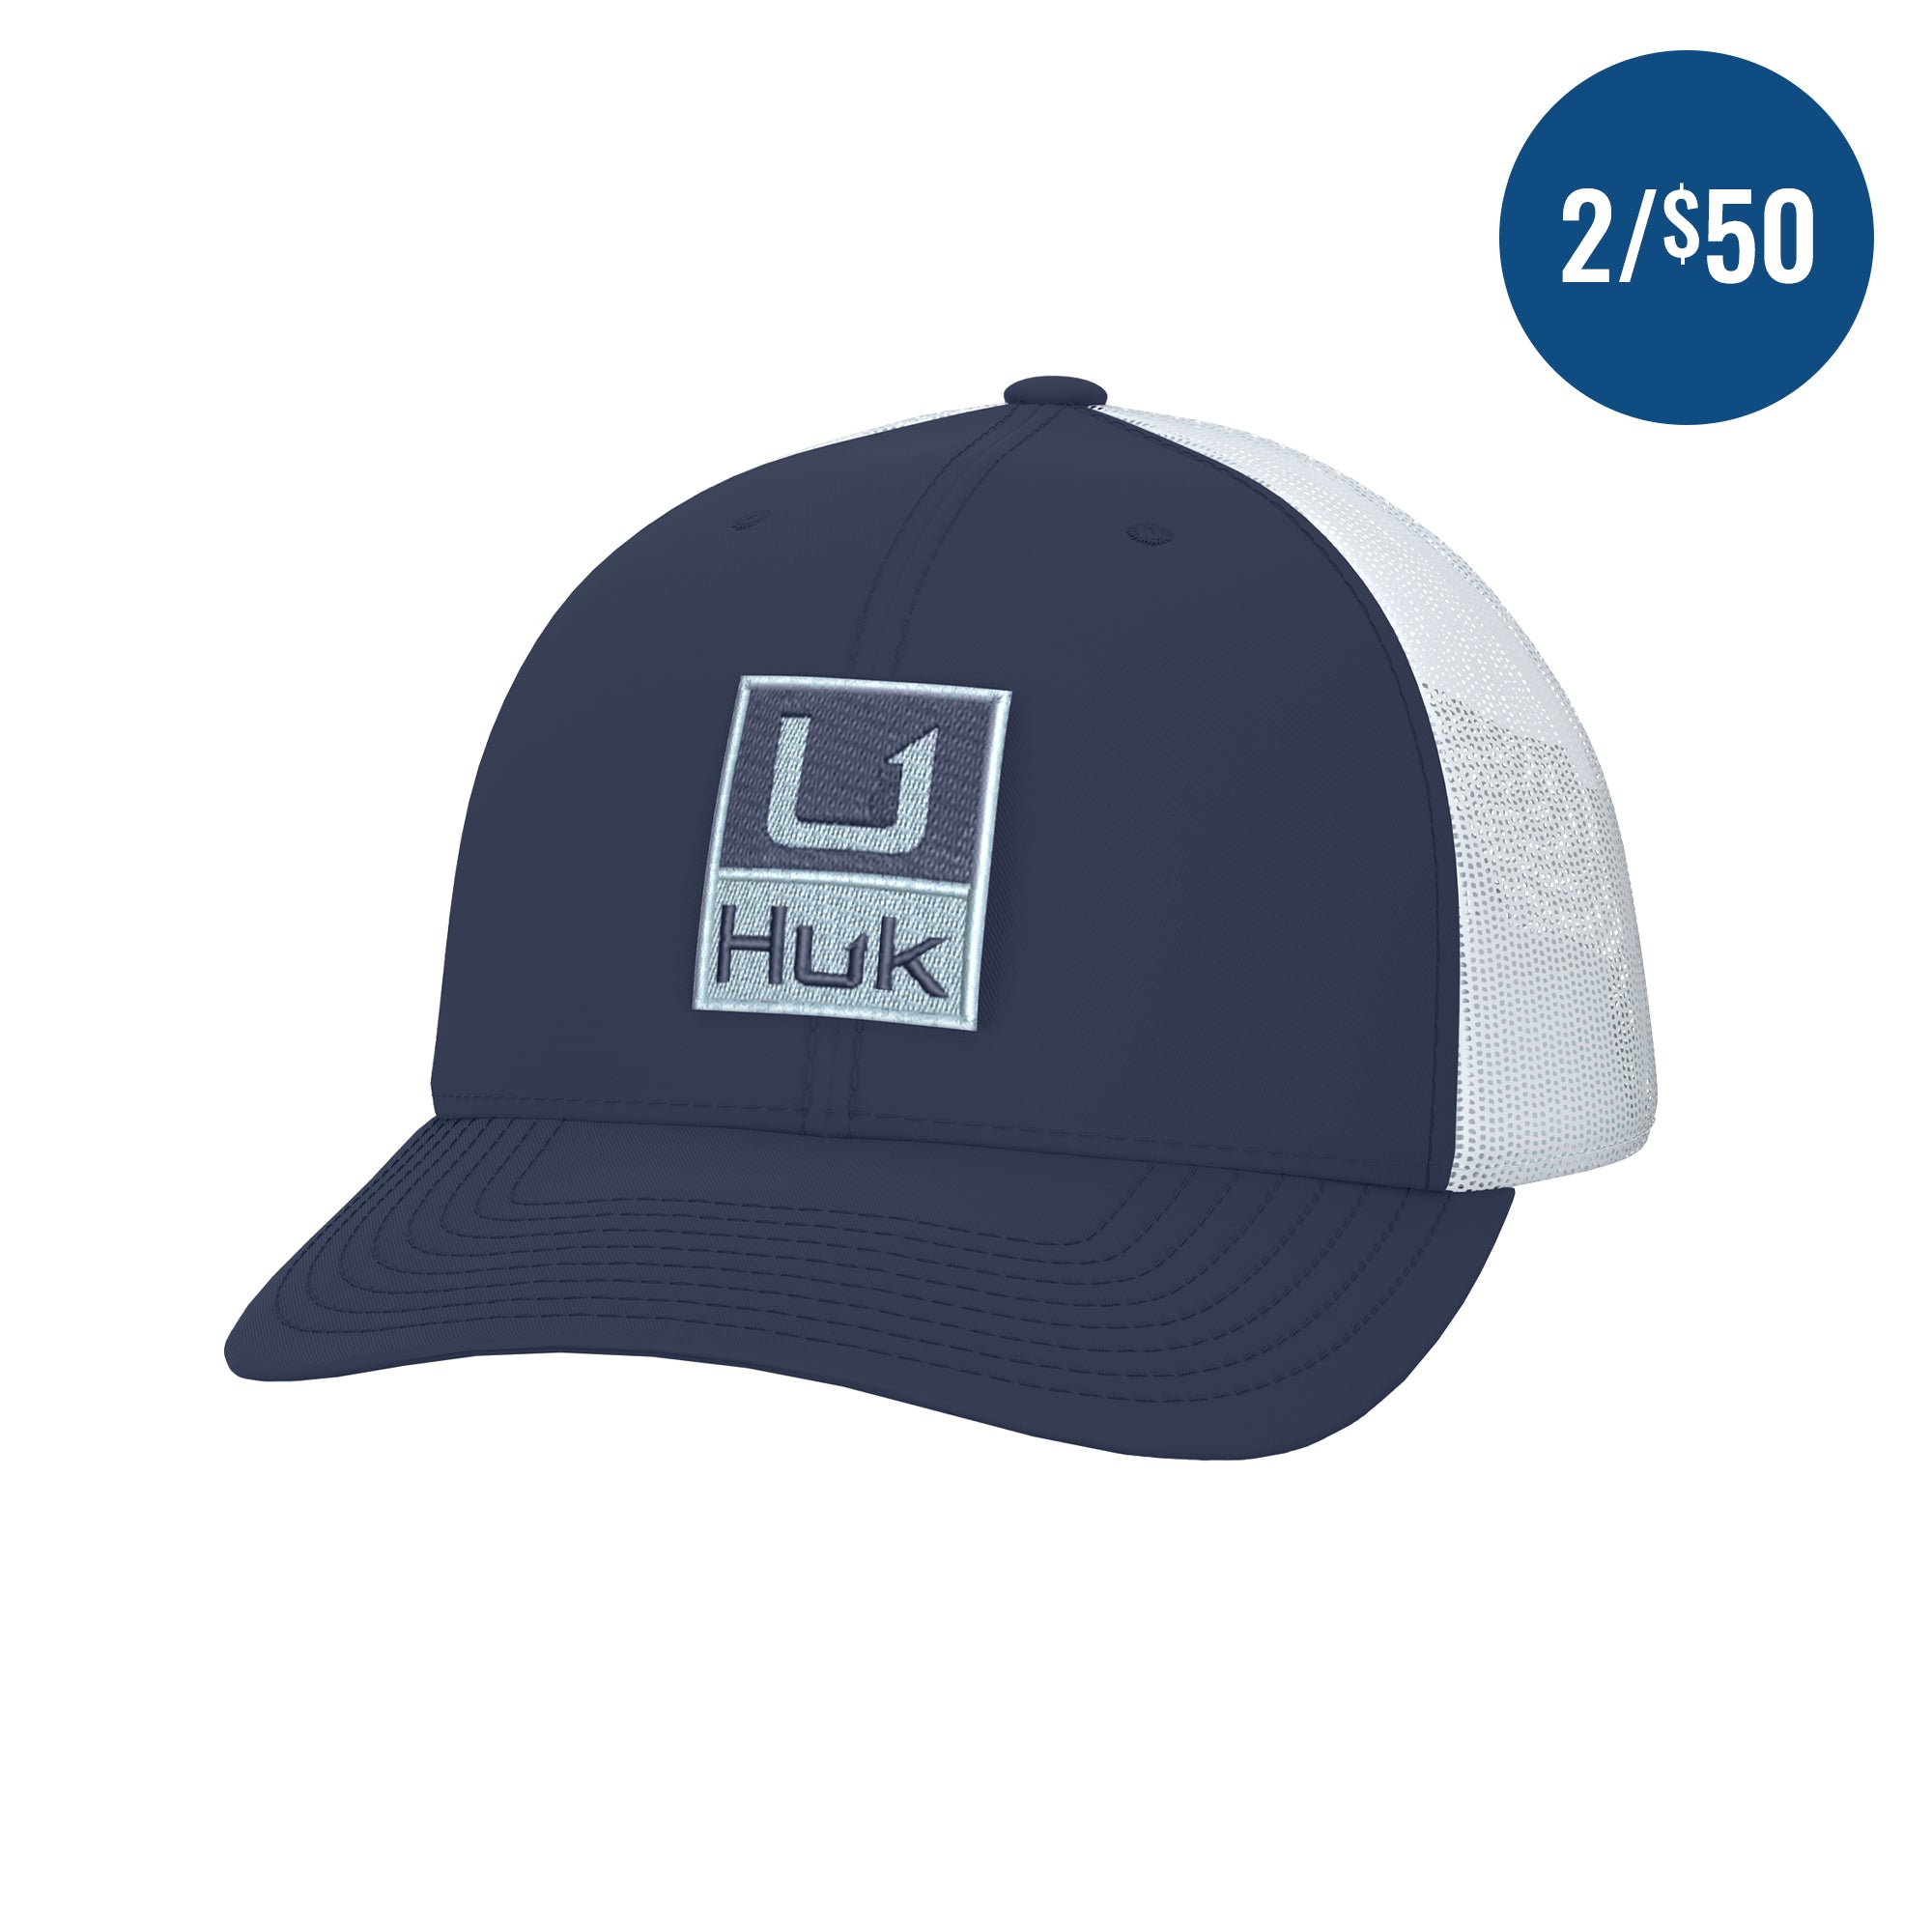 Huk'D Up Trucker Hat – Huk Gear